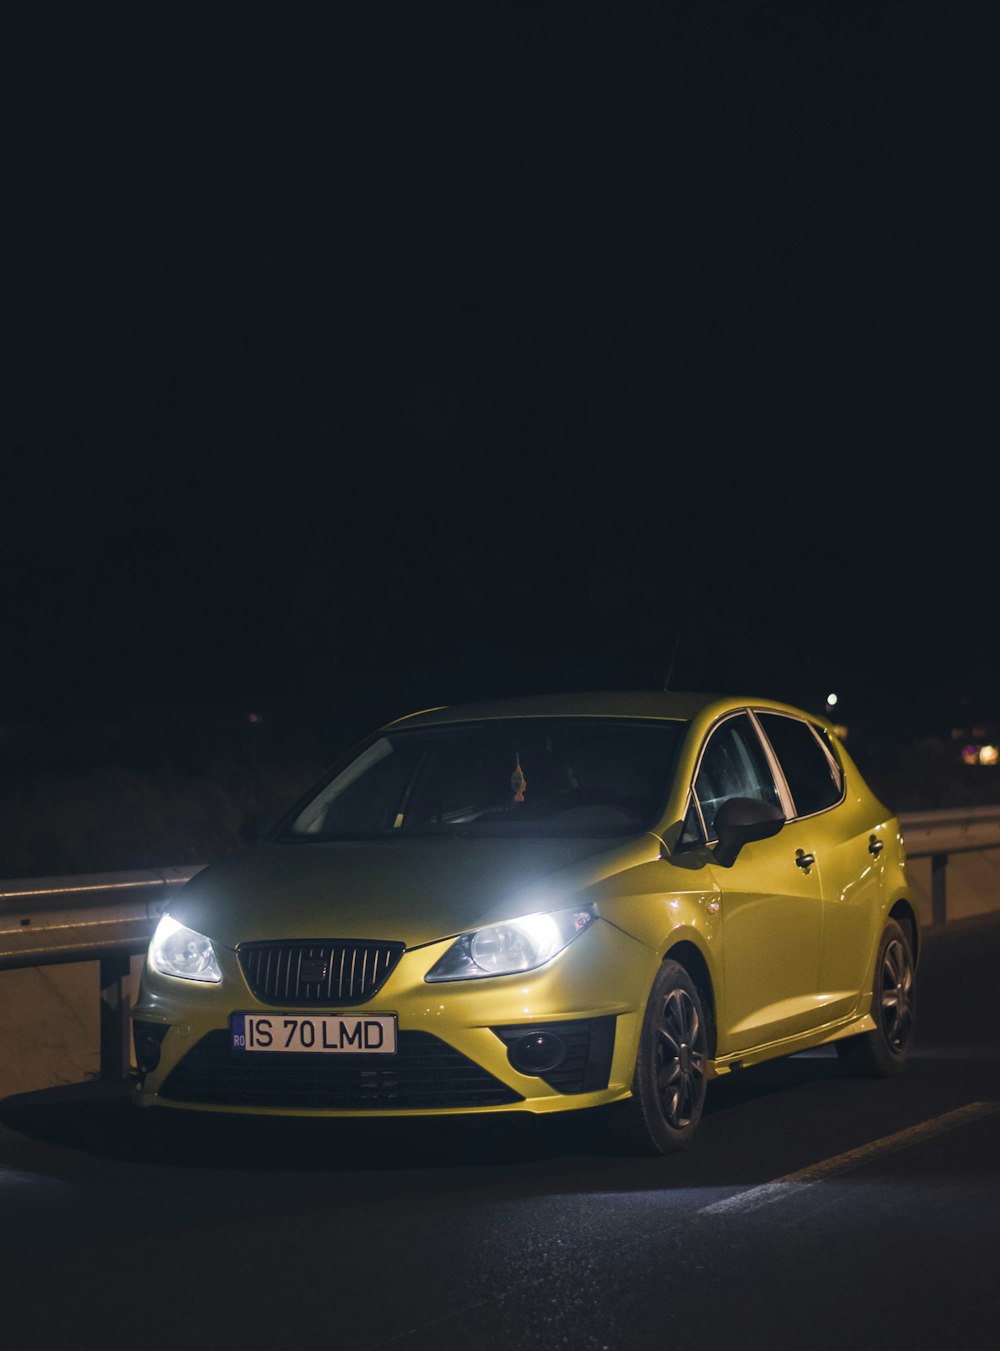 Un coche amarillo circulando por una carretera de noche